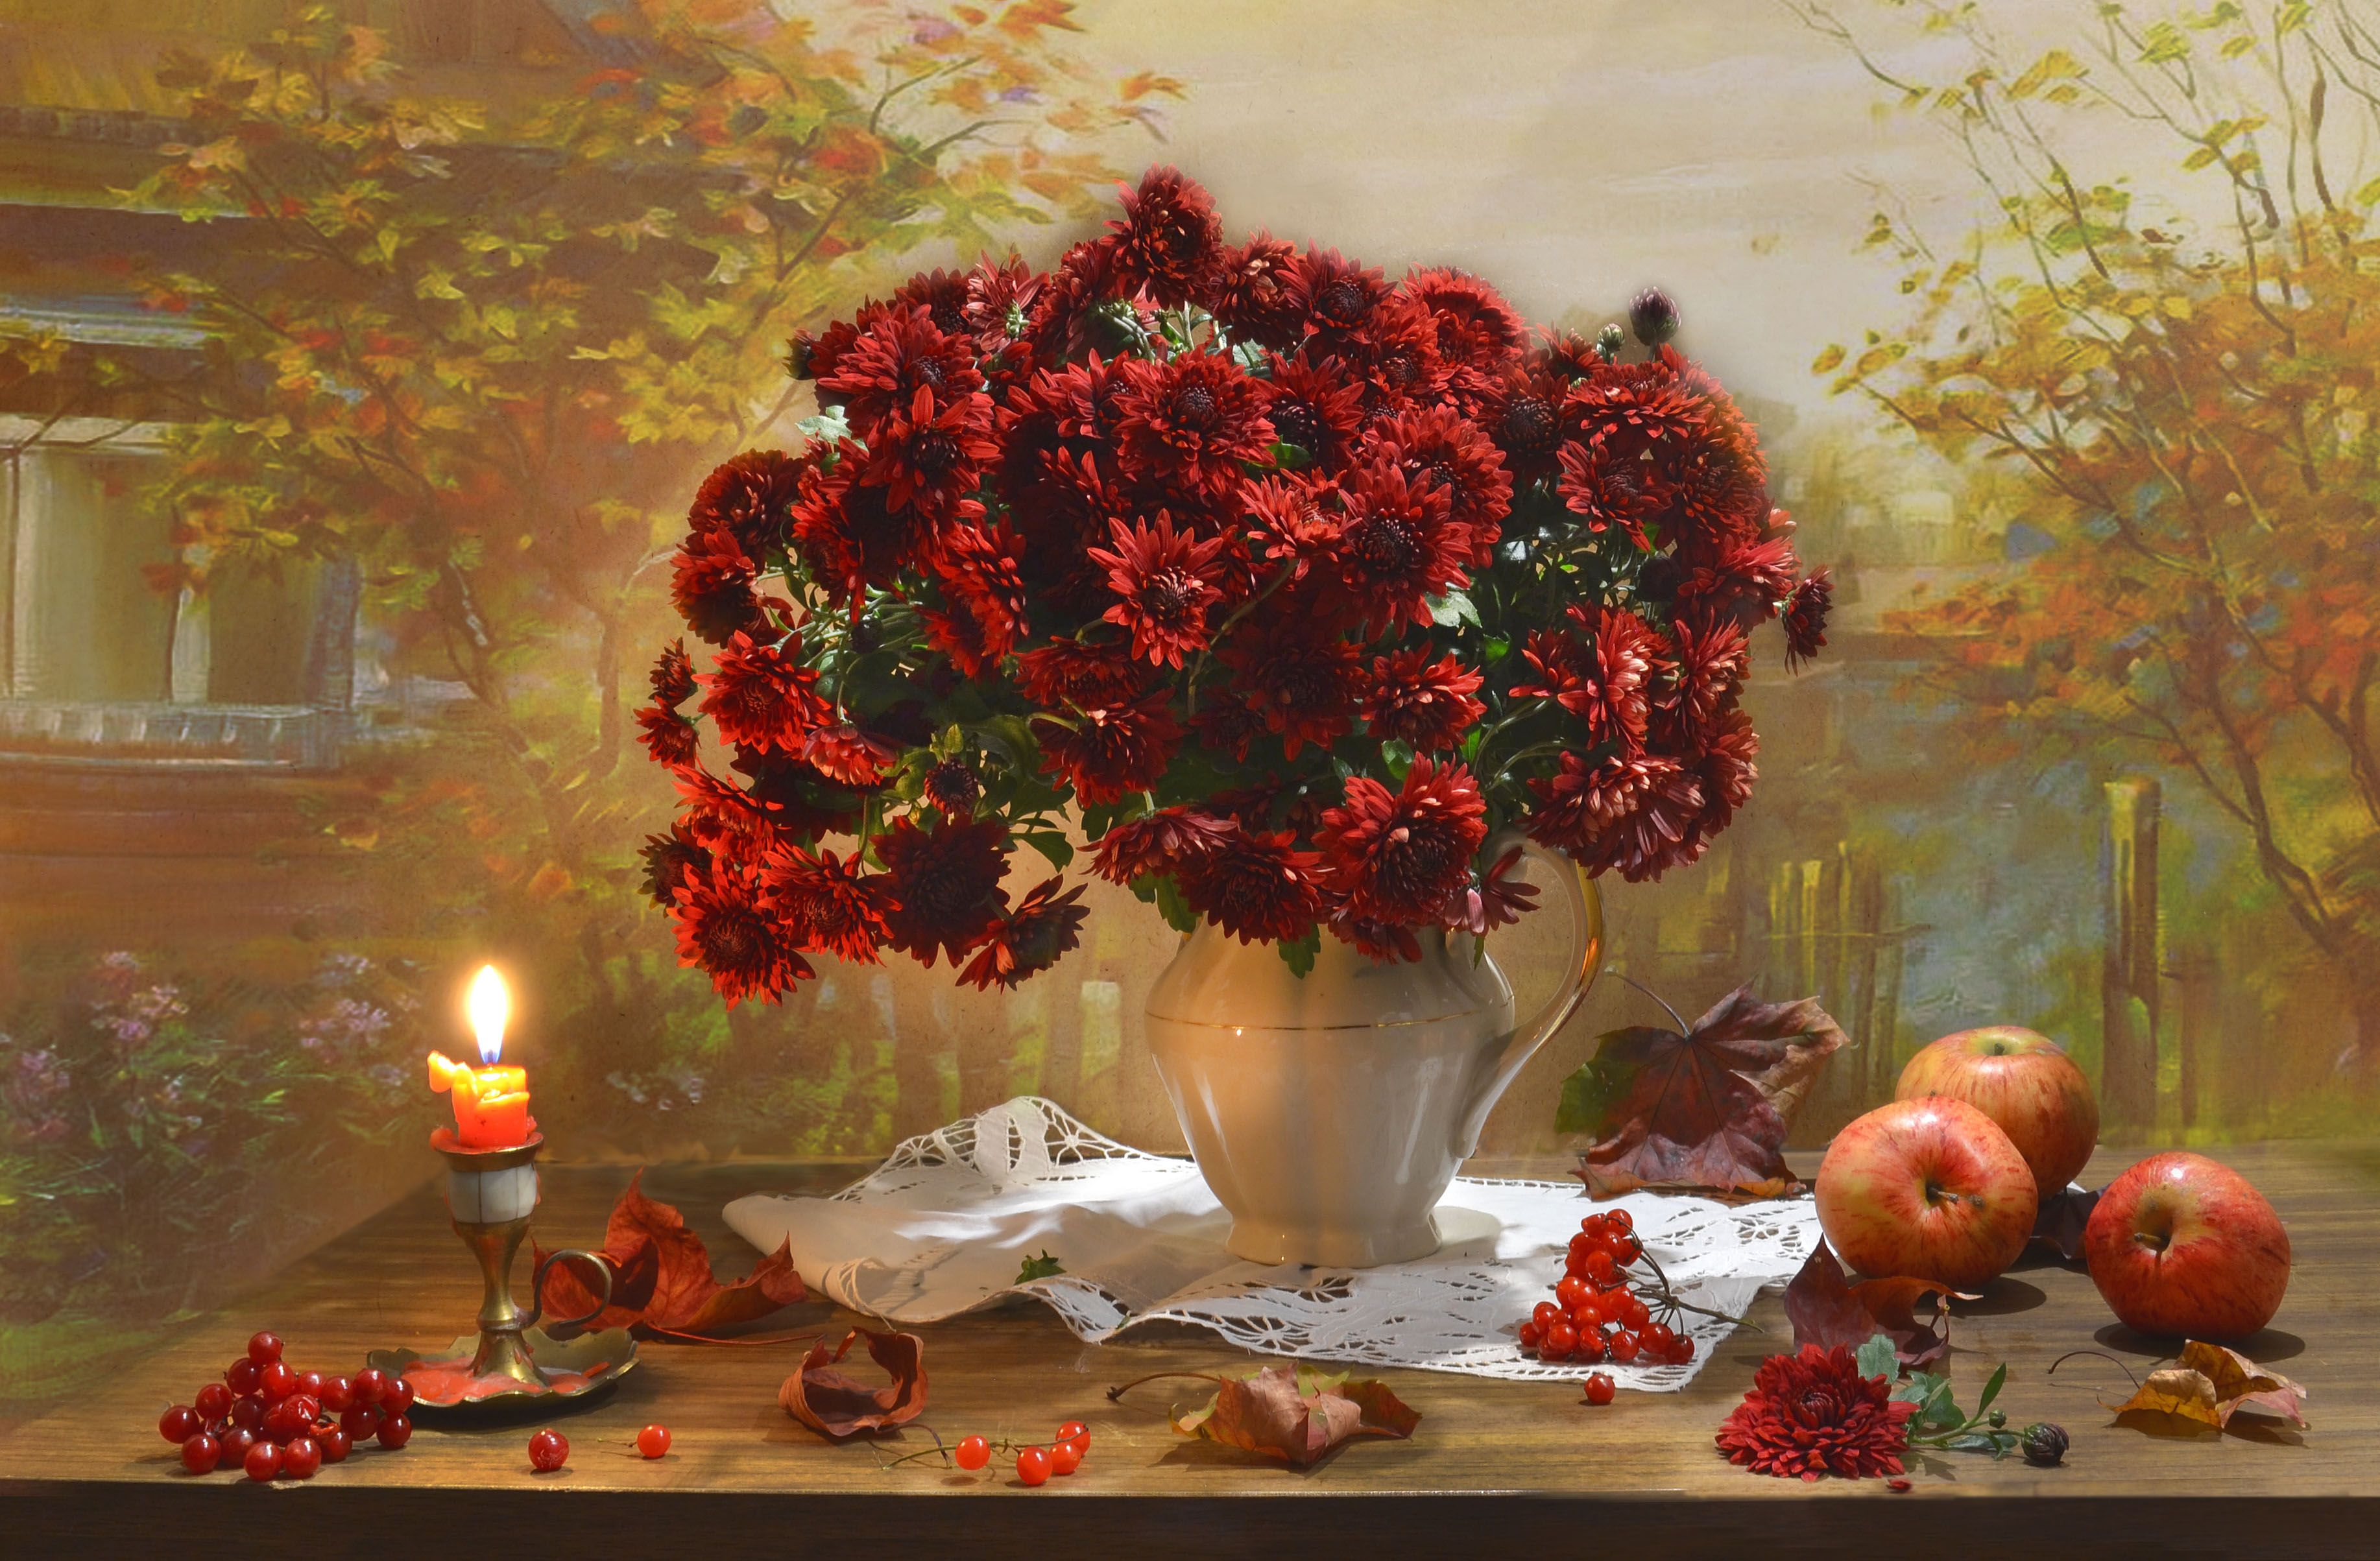 still life, натюрморт, фото натюрморт, осень, октябрь, кленовые листья, свеча, подсвечник, калина, настроение, хризантемы, яблоки, Колова Валентина